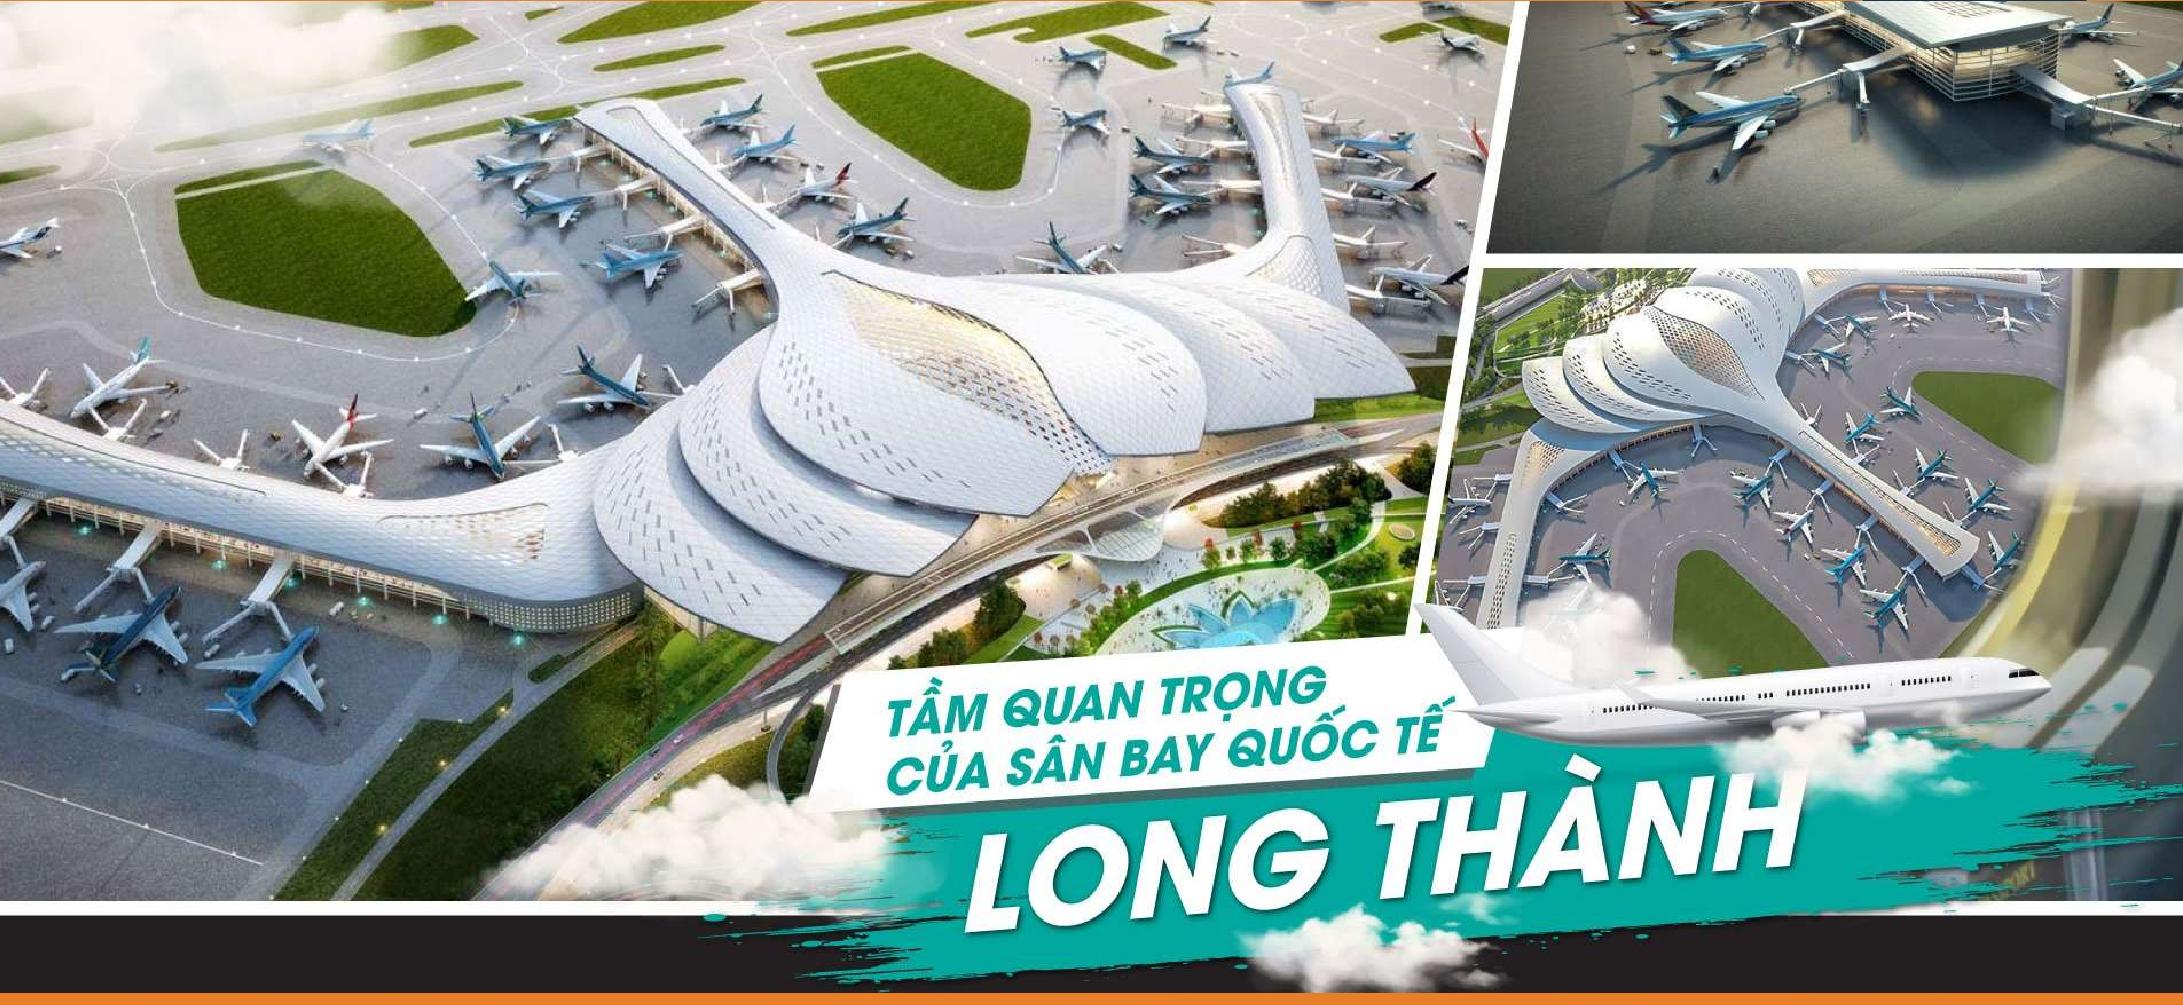 Tầm quan trọng của sân bay quốc tế Long Thành